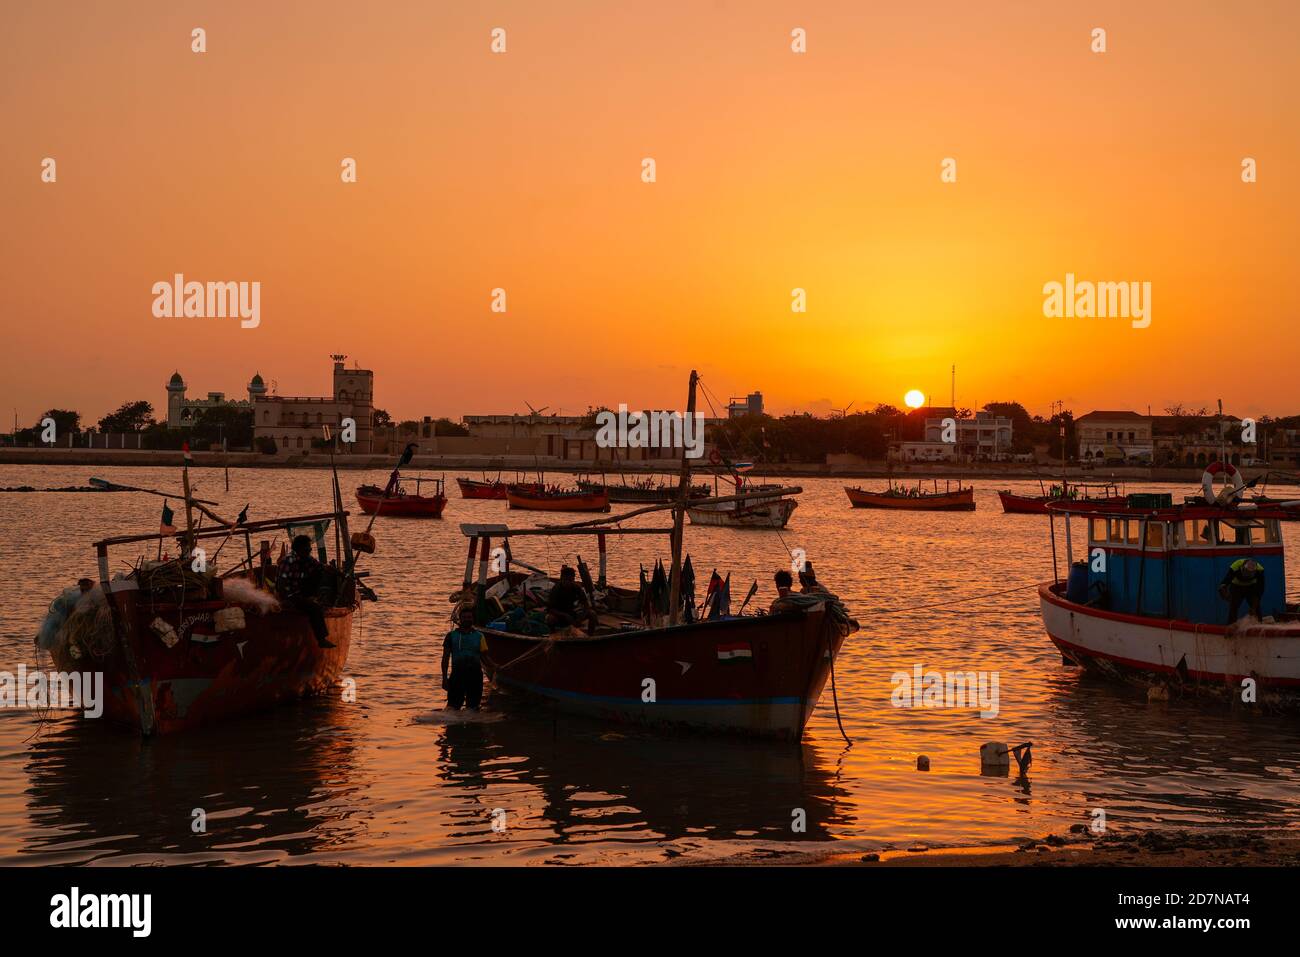 Mandvi ,23, août , 2019 : bateaux de pêche à la mer d'Arabie en soirée avec coucher de soleil en arrière-plan de la ville de Mandvi, Kutch, Gujarat, Inde, Asie Banque D'Images